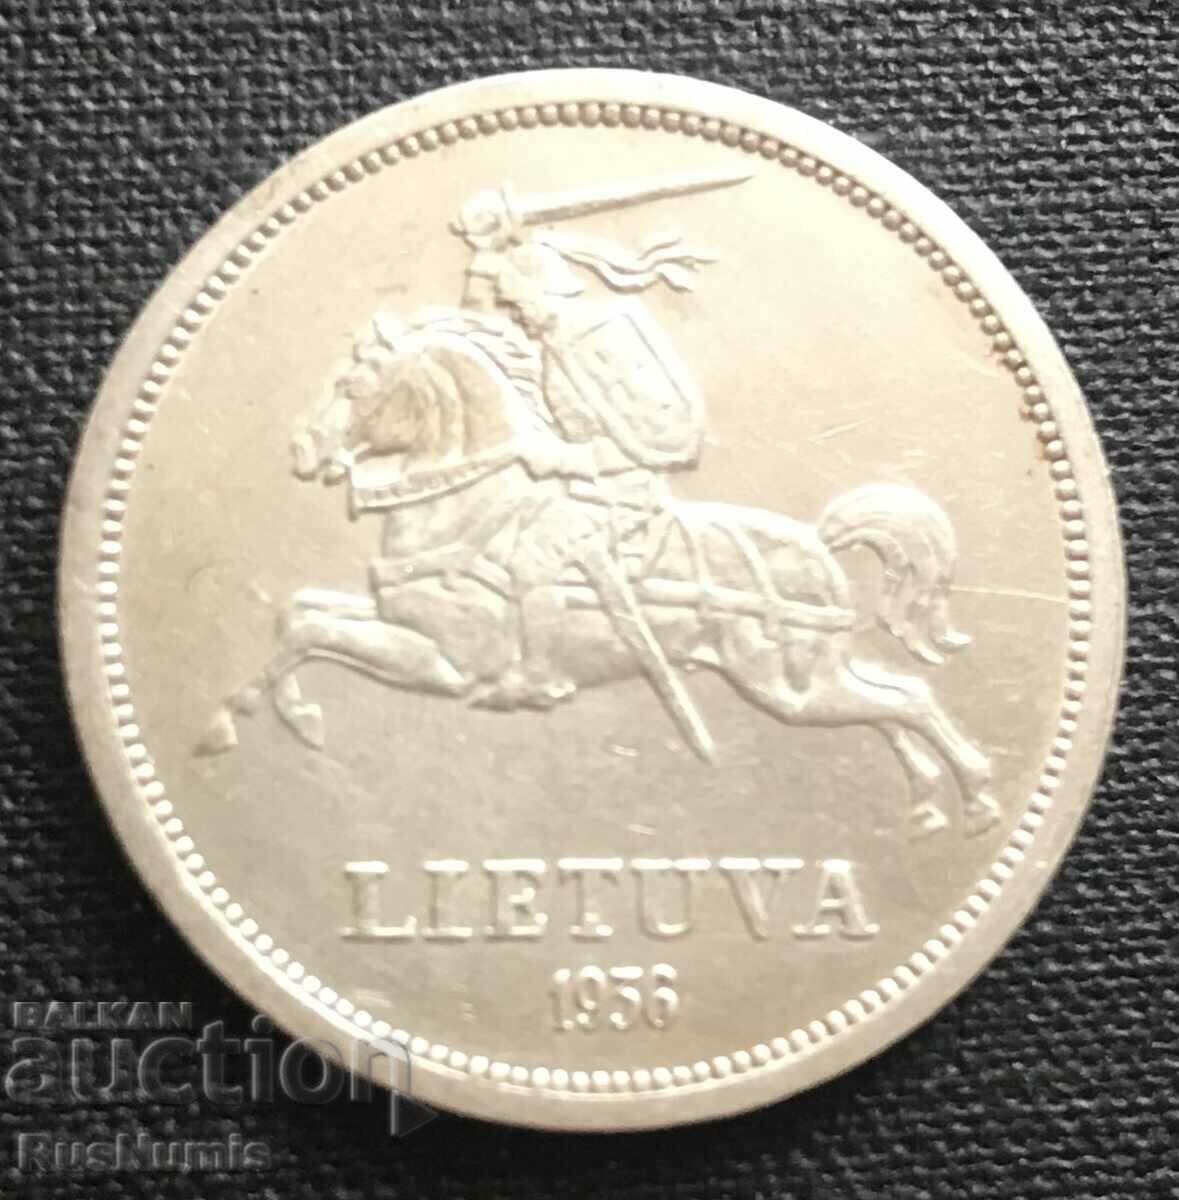 Lithuania. 5 litas 1936. Silver.